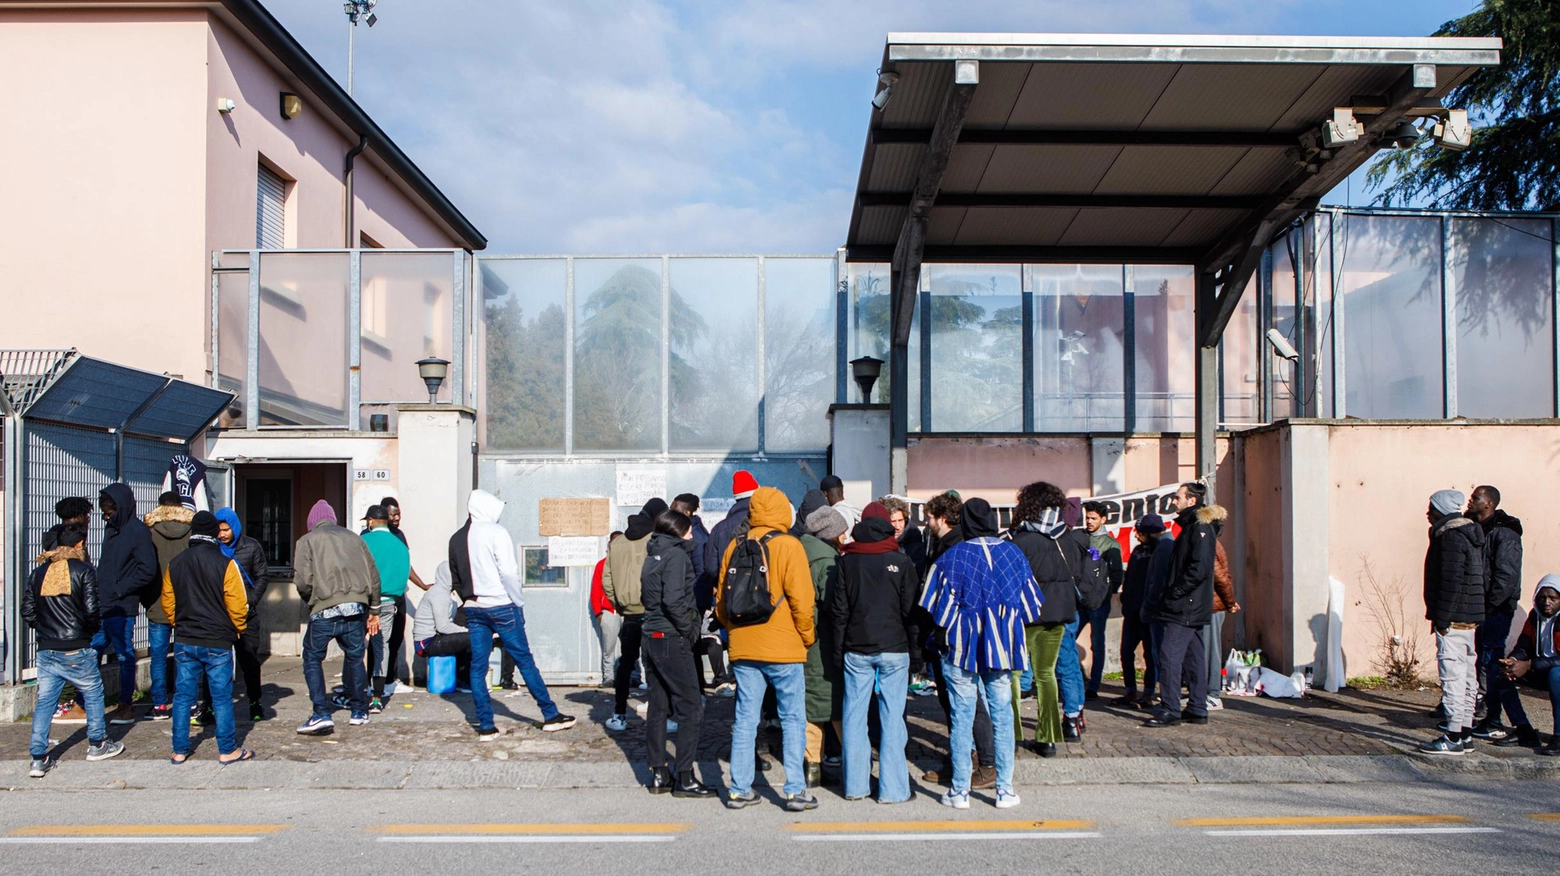 Migranti, arrivi triplicati in città  Riparte la macchina dell’accoglienza  "Ma c’è bisogno di nuove strutture"